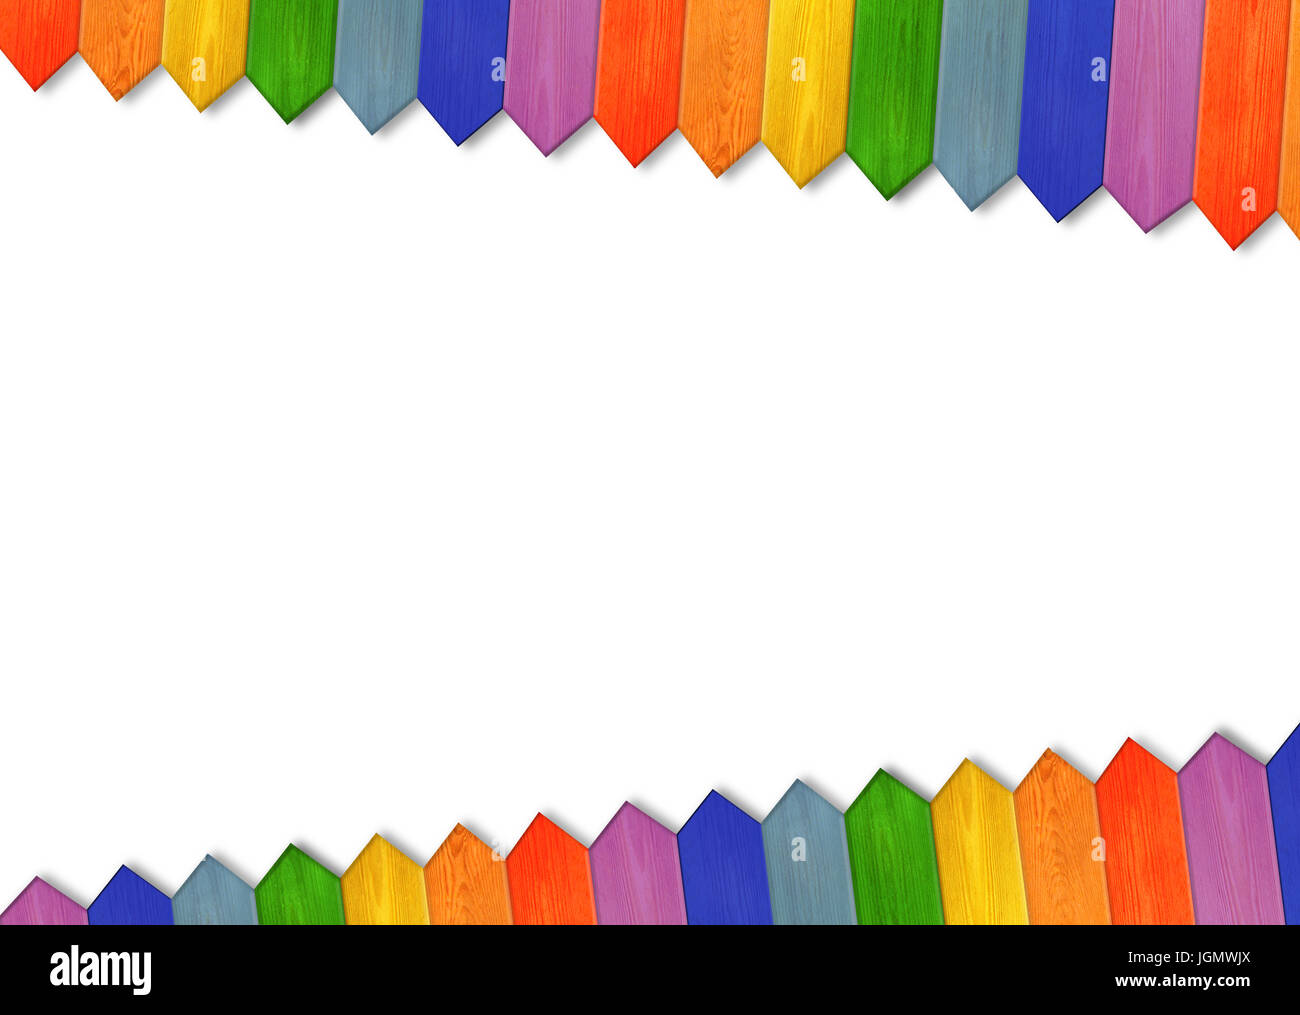 Jolly infantil valla multicolores aislado en el fondo blanco. Valla de madera multicolores de colores del arco iris. Patrón de madera en las esquinas. Foto de stock